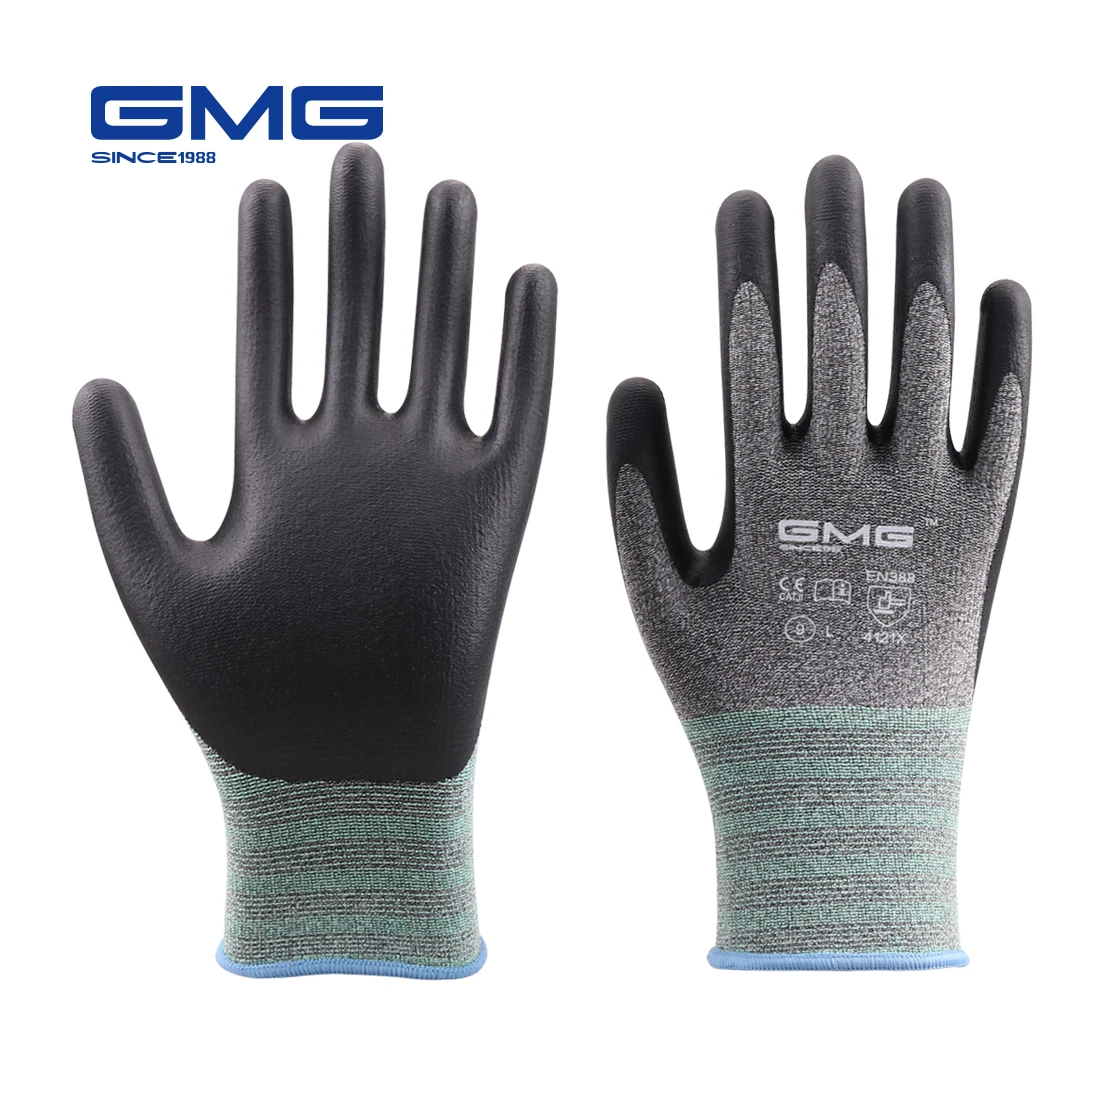 

Hot Sales 3 Pairs Work Gloves GMG Safety Garden Mechanic Protective gloves Women Men Gloves Nitrile Safety Working Glove